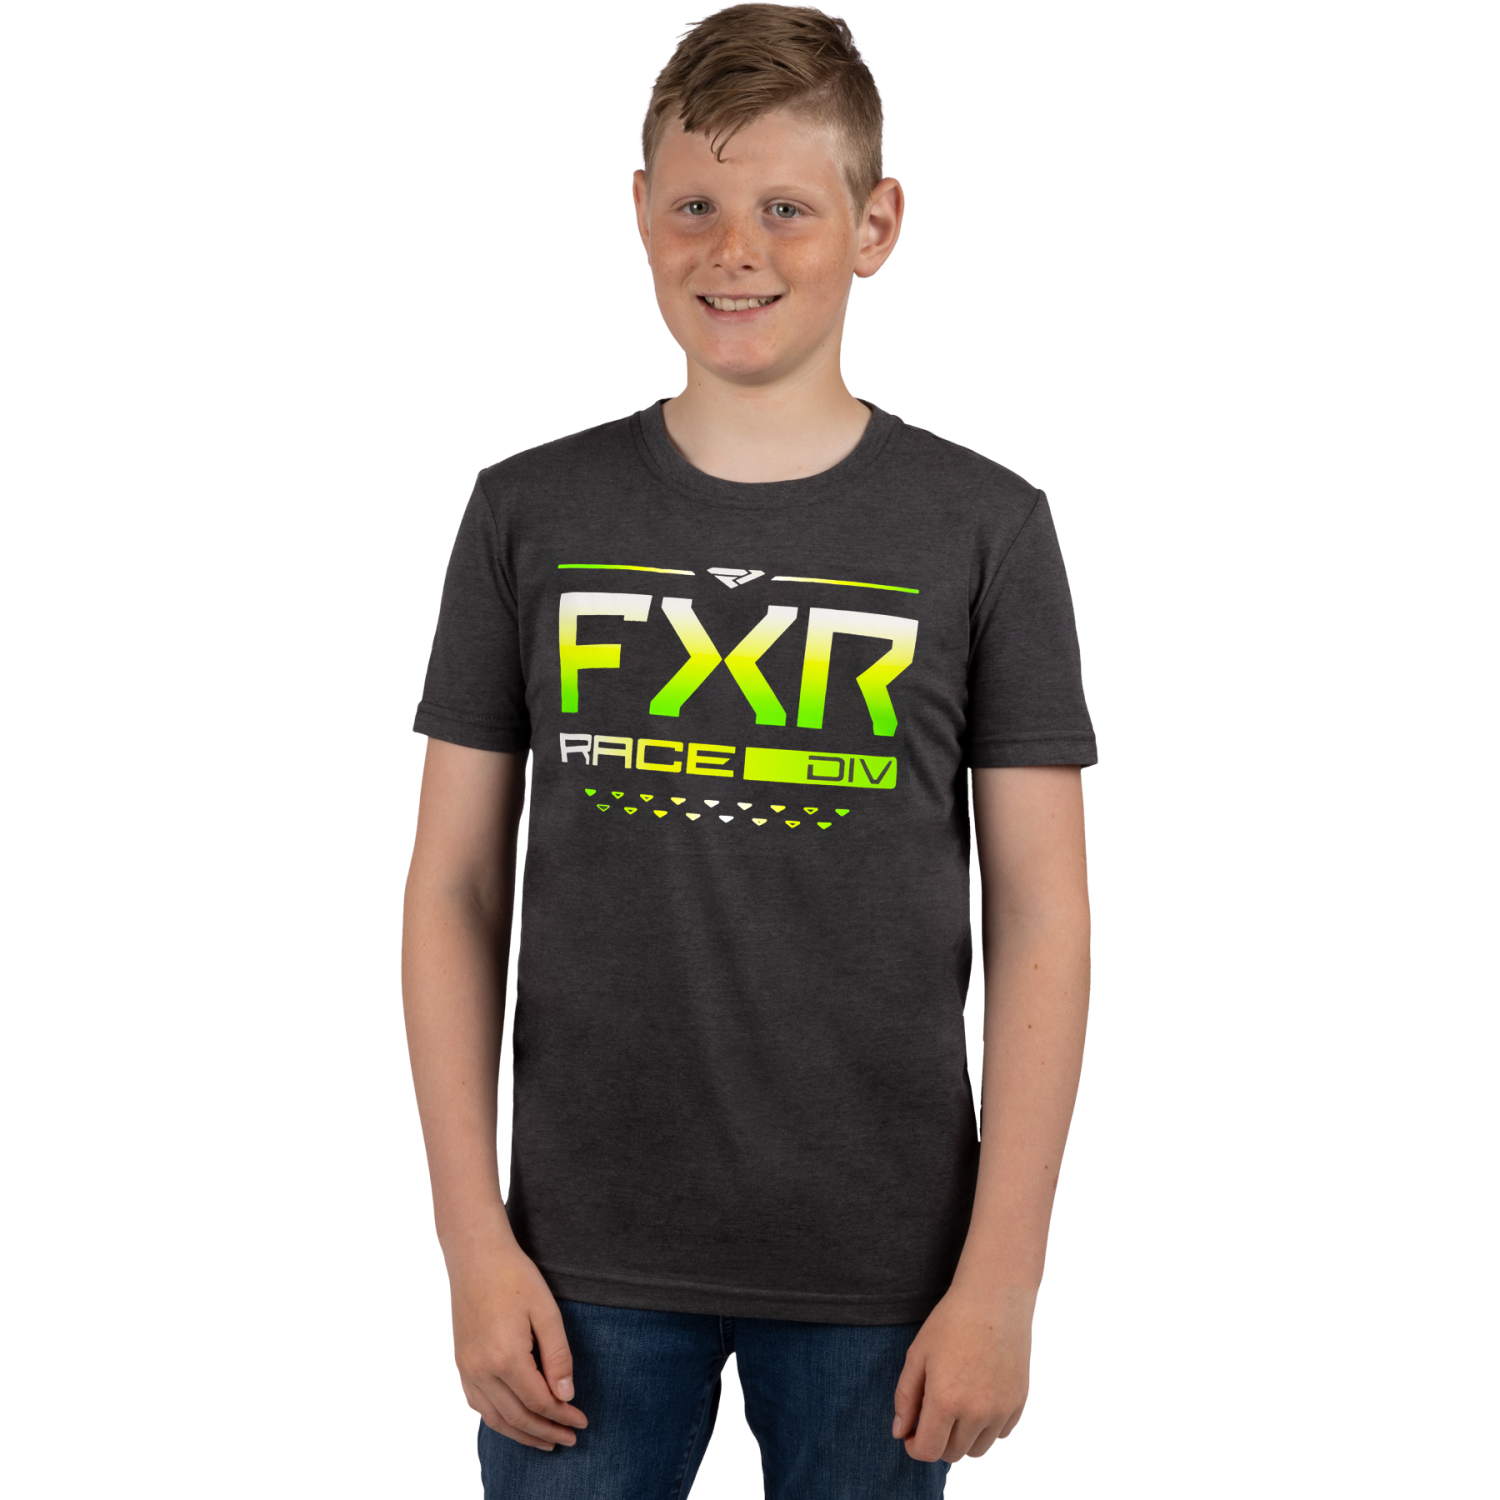 FXR Race Division Premium T-Shirt Yth